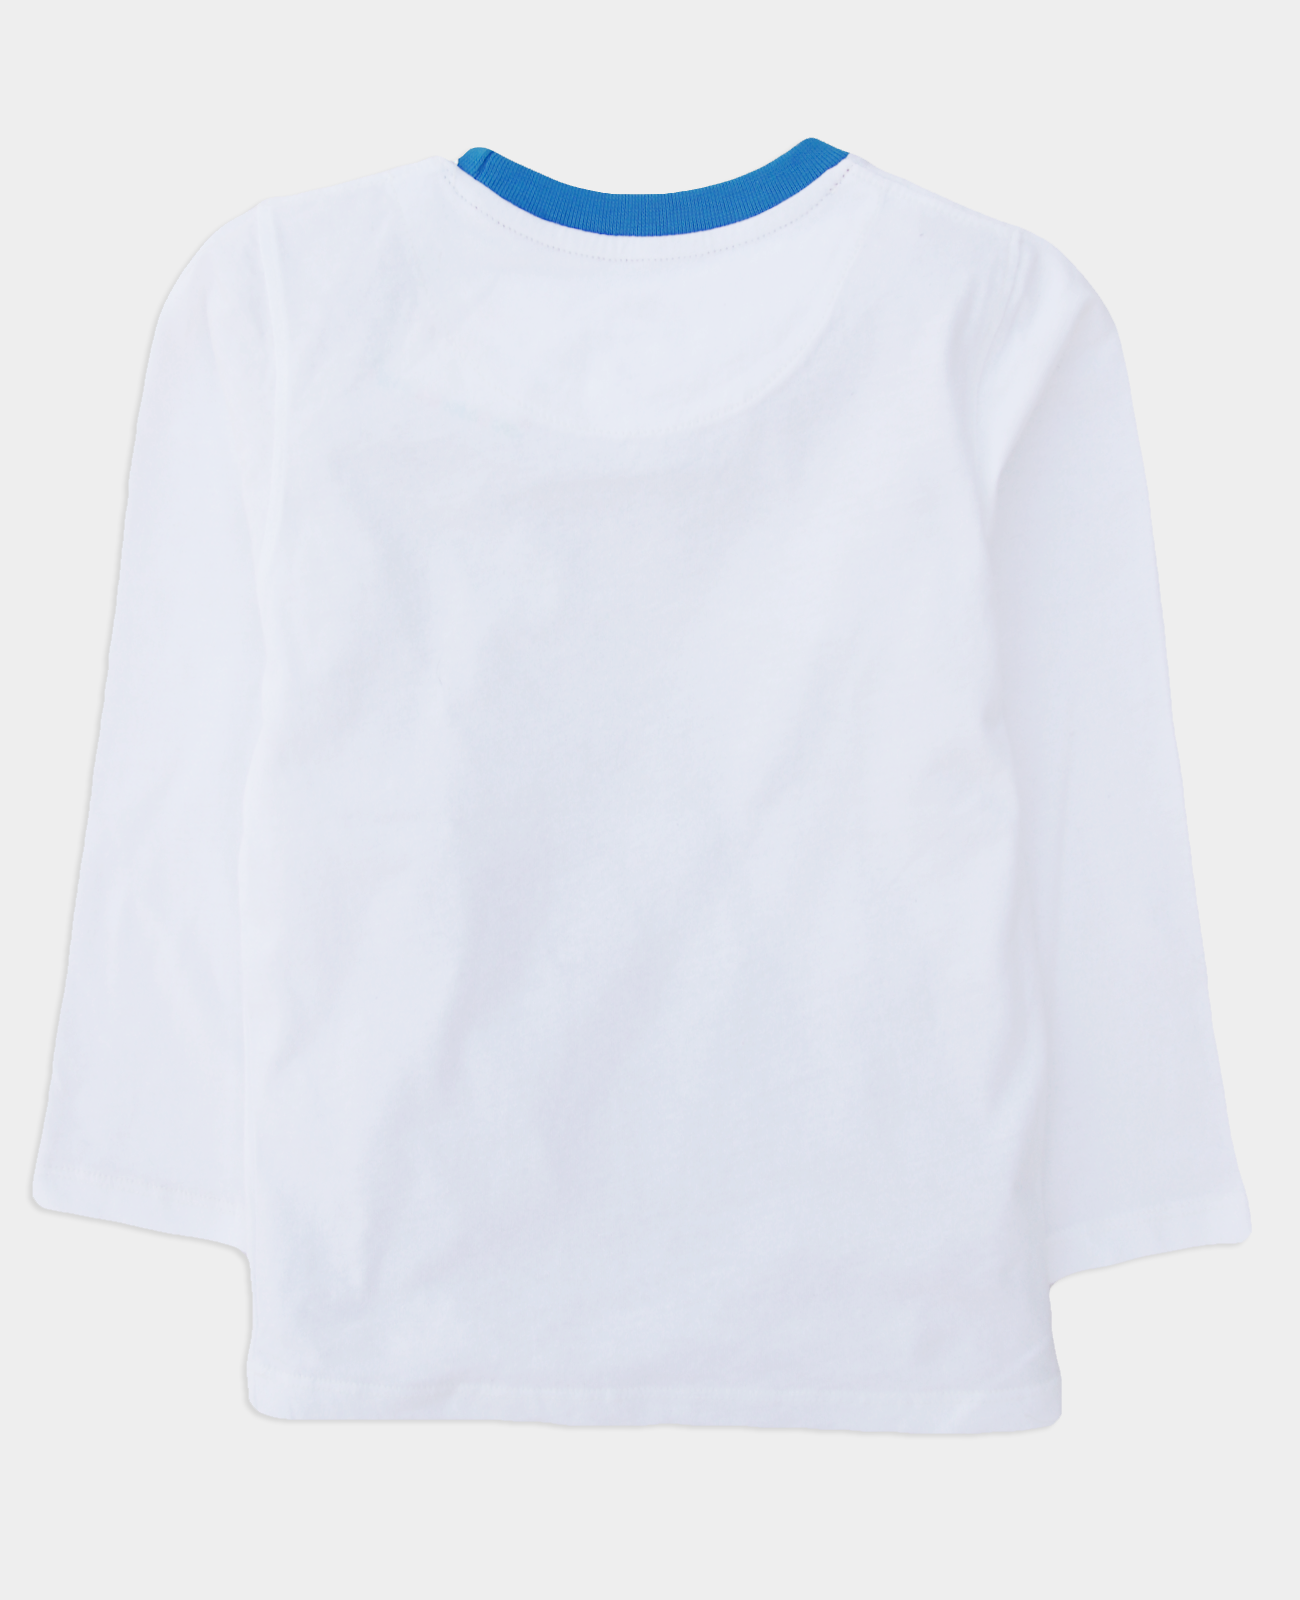 White Graphic T Shirt